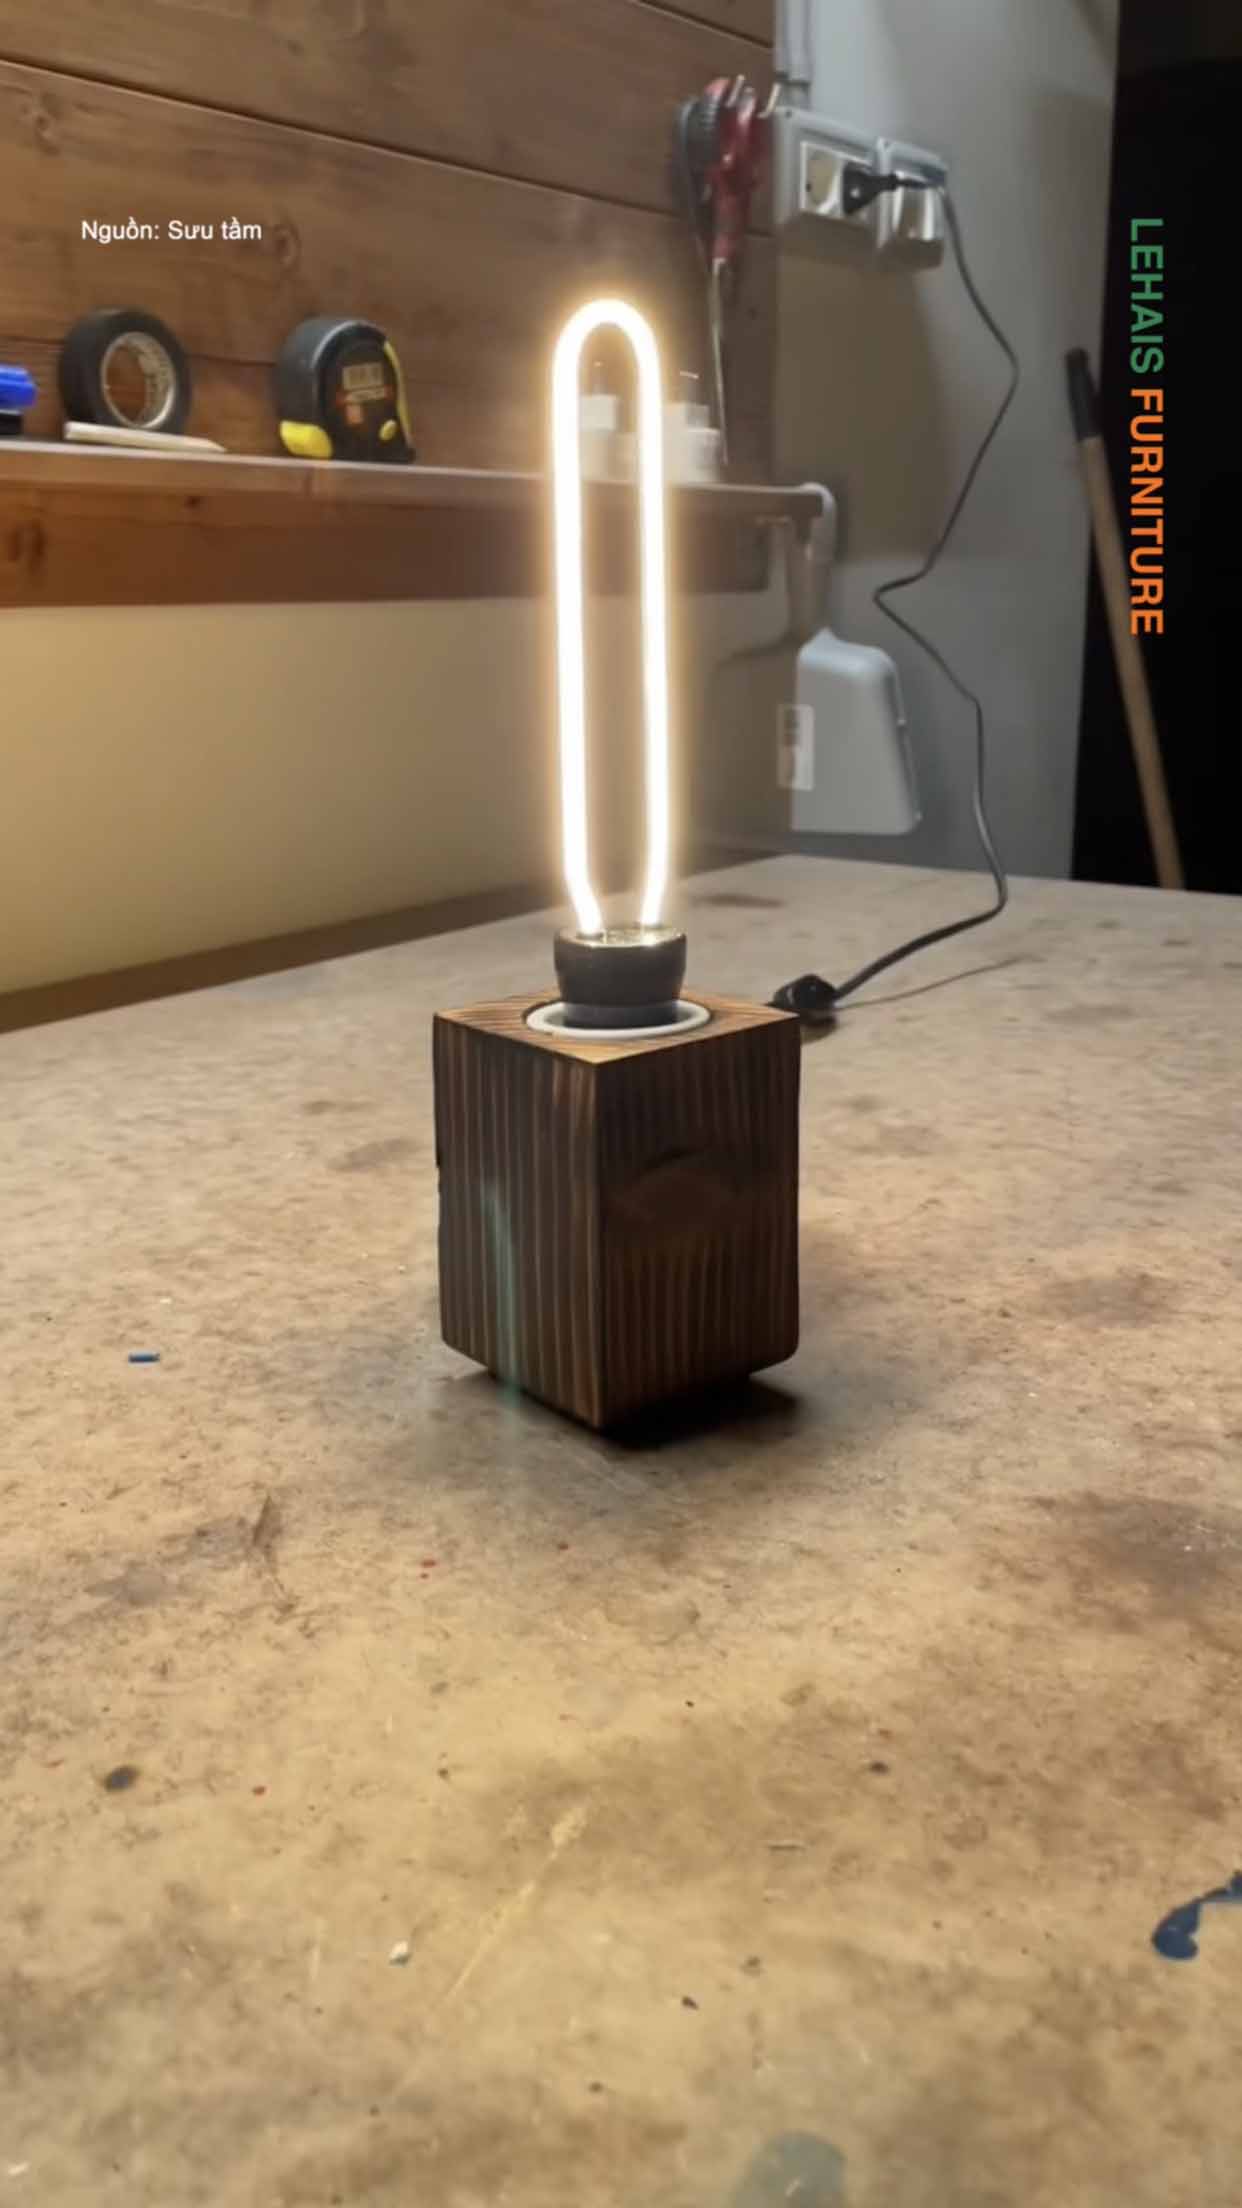 Chiếc đèn được làm từ miếng gỗ đơn giản nhưng vấn ấn tượng